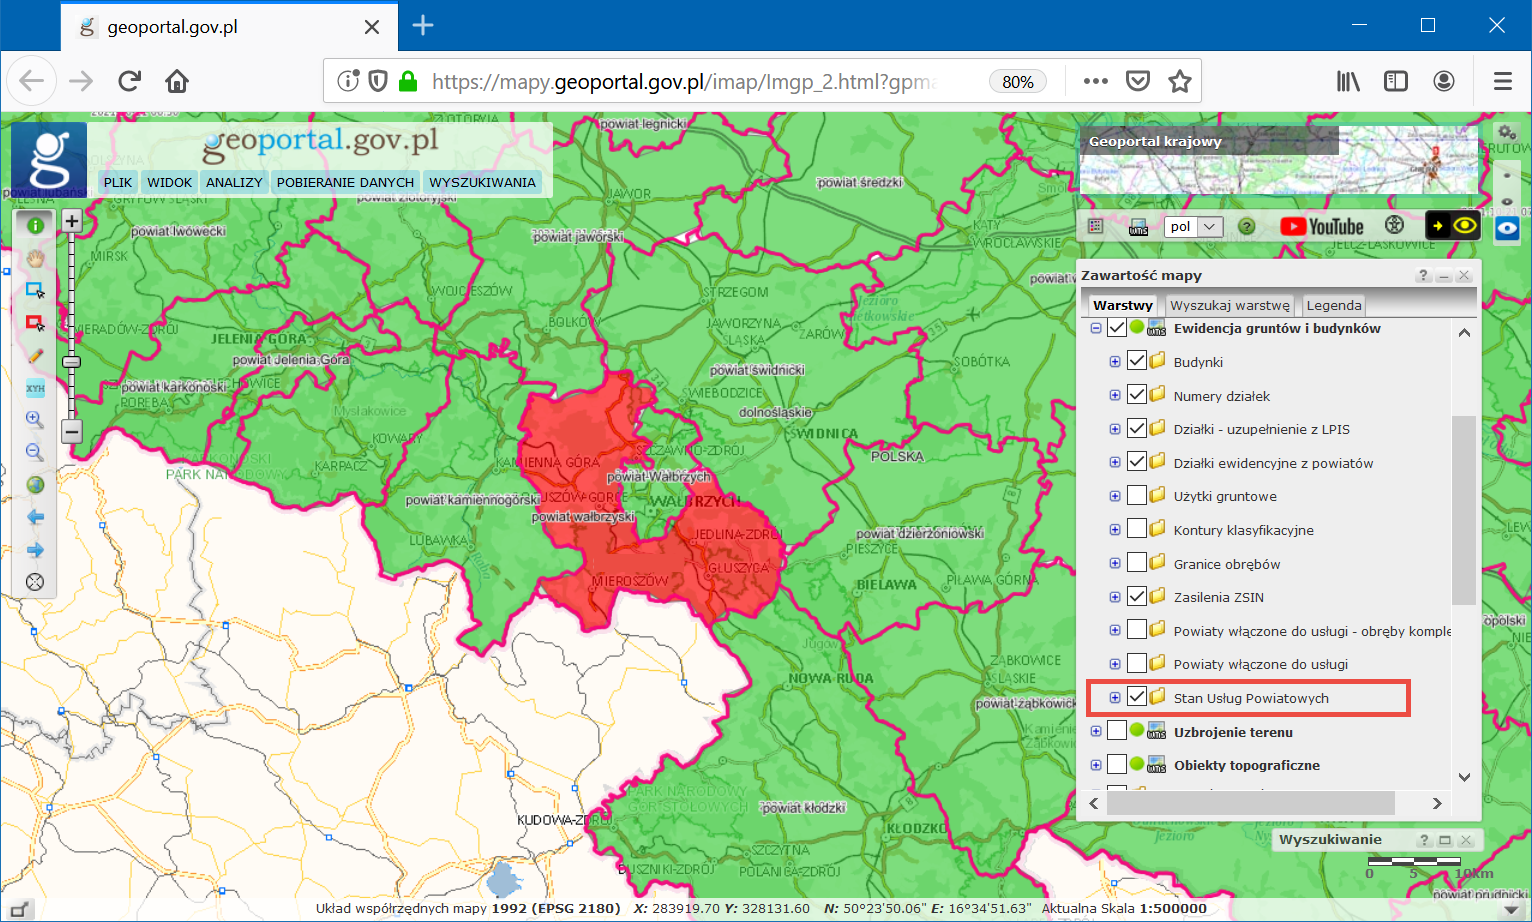 Zrzut z ekranu z serwisu www.geoportal.gov.pl z wyświetlonym stanem usług na fragmencie mapy Polski z zaznaczonym terenem, na którym usługi nie działają.